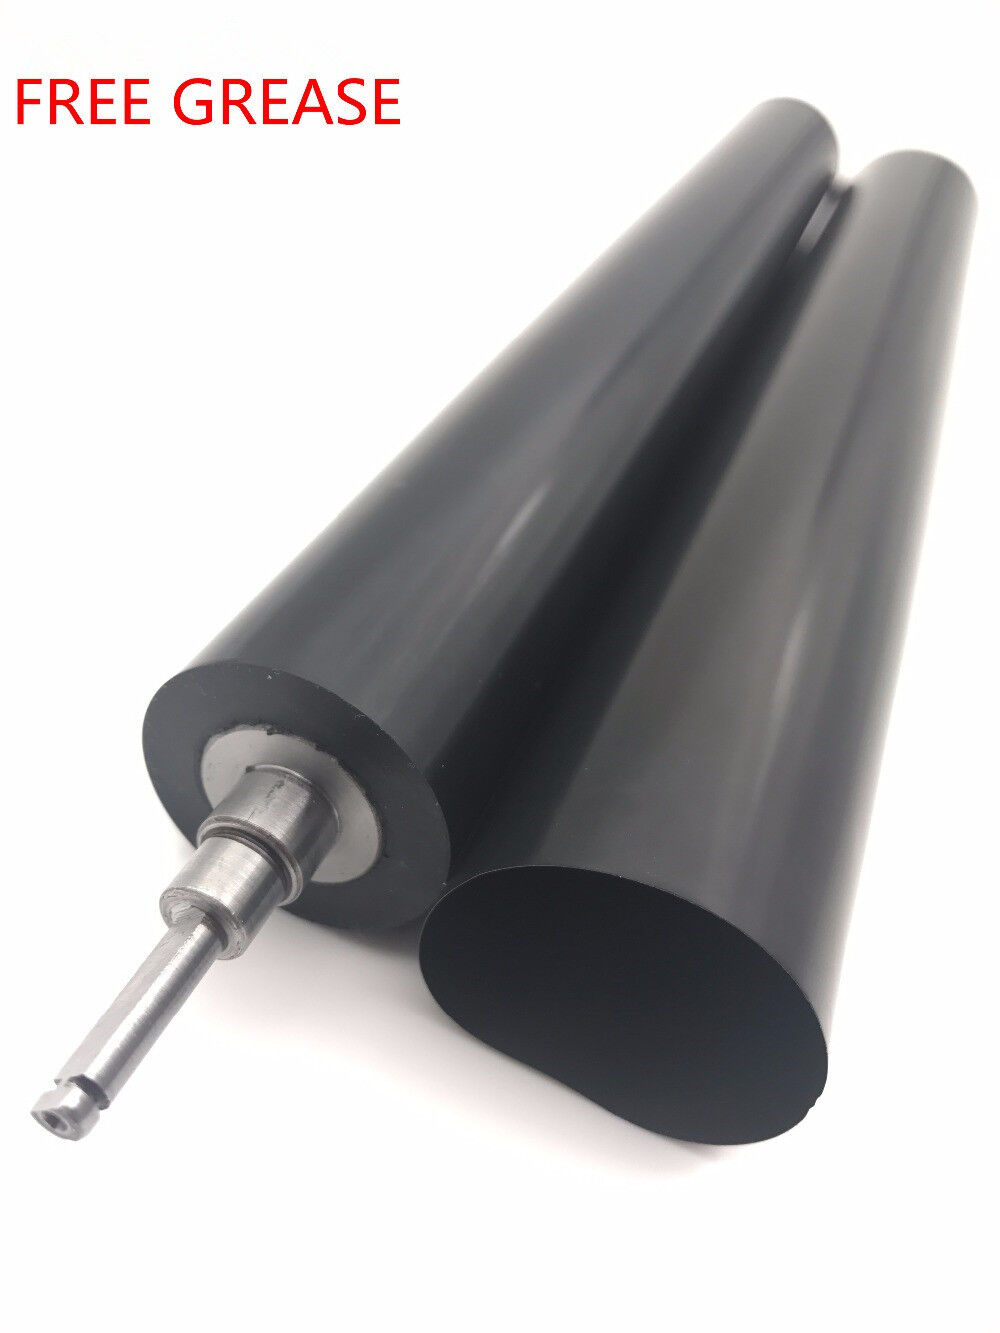 Fuser Film Sleeve Pressure Roller for Brother DCP-L5500 DCP-L5600/L5650 HL-L5000